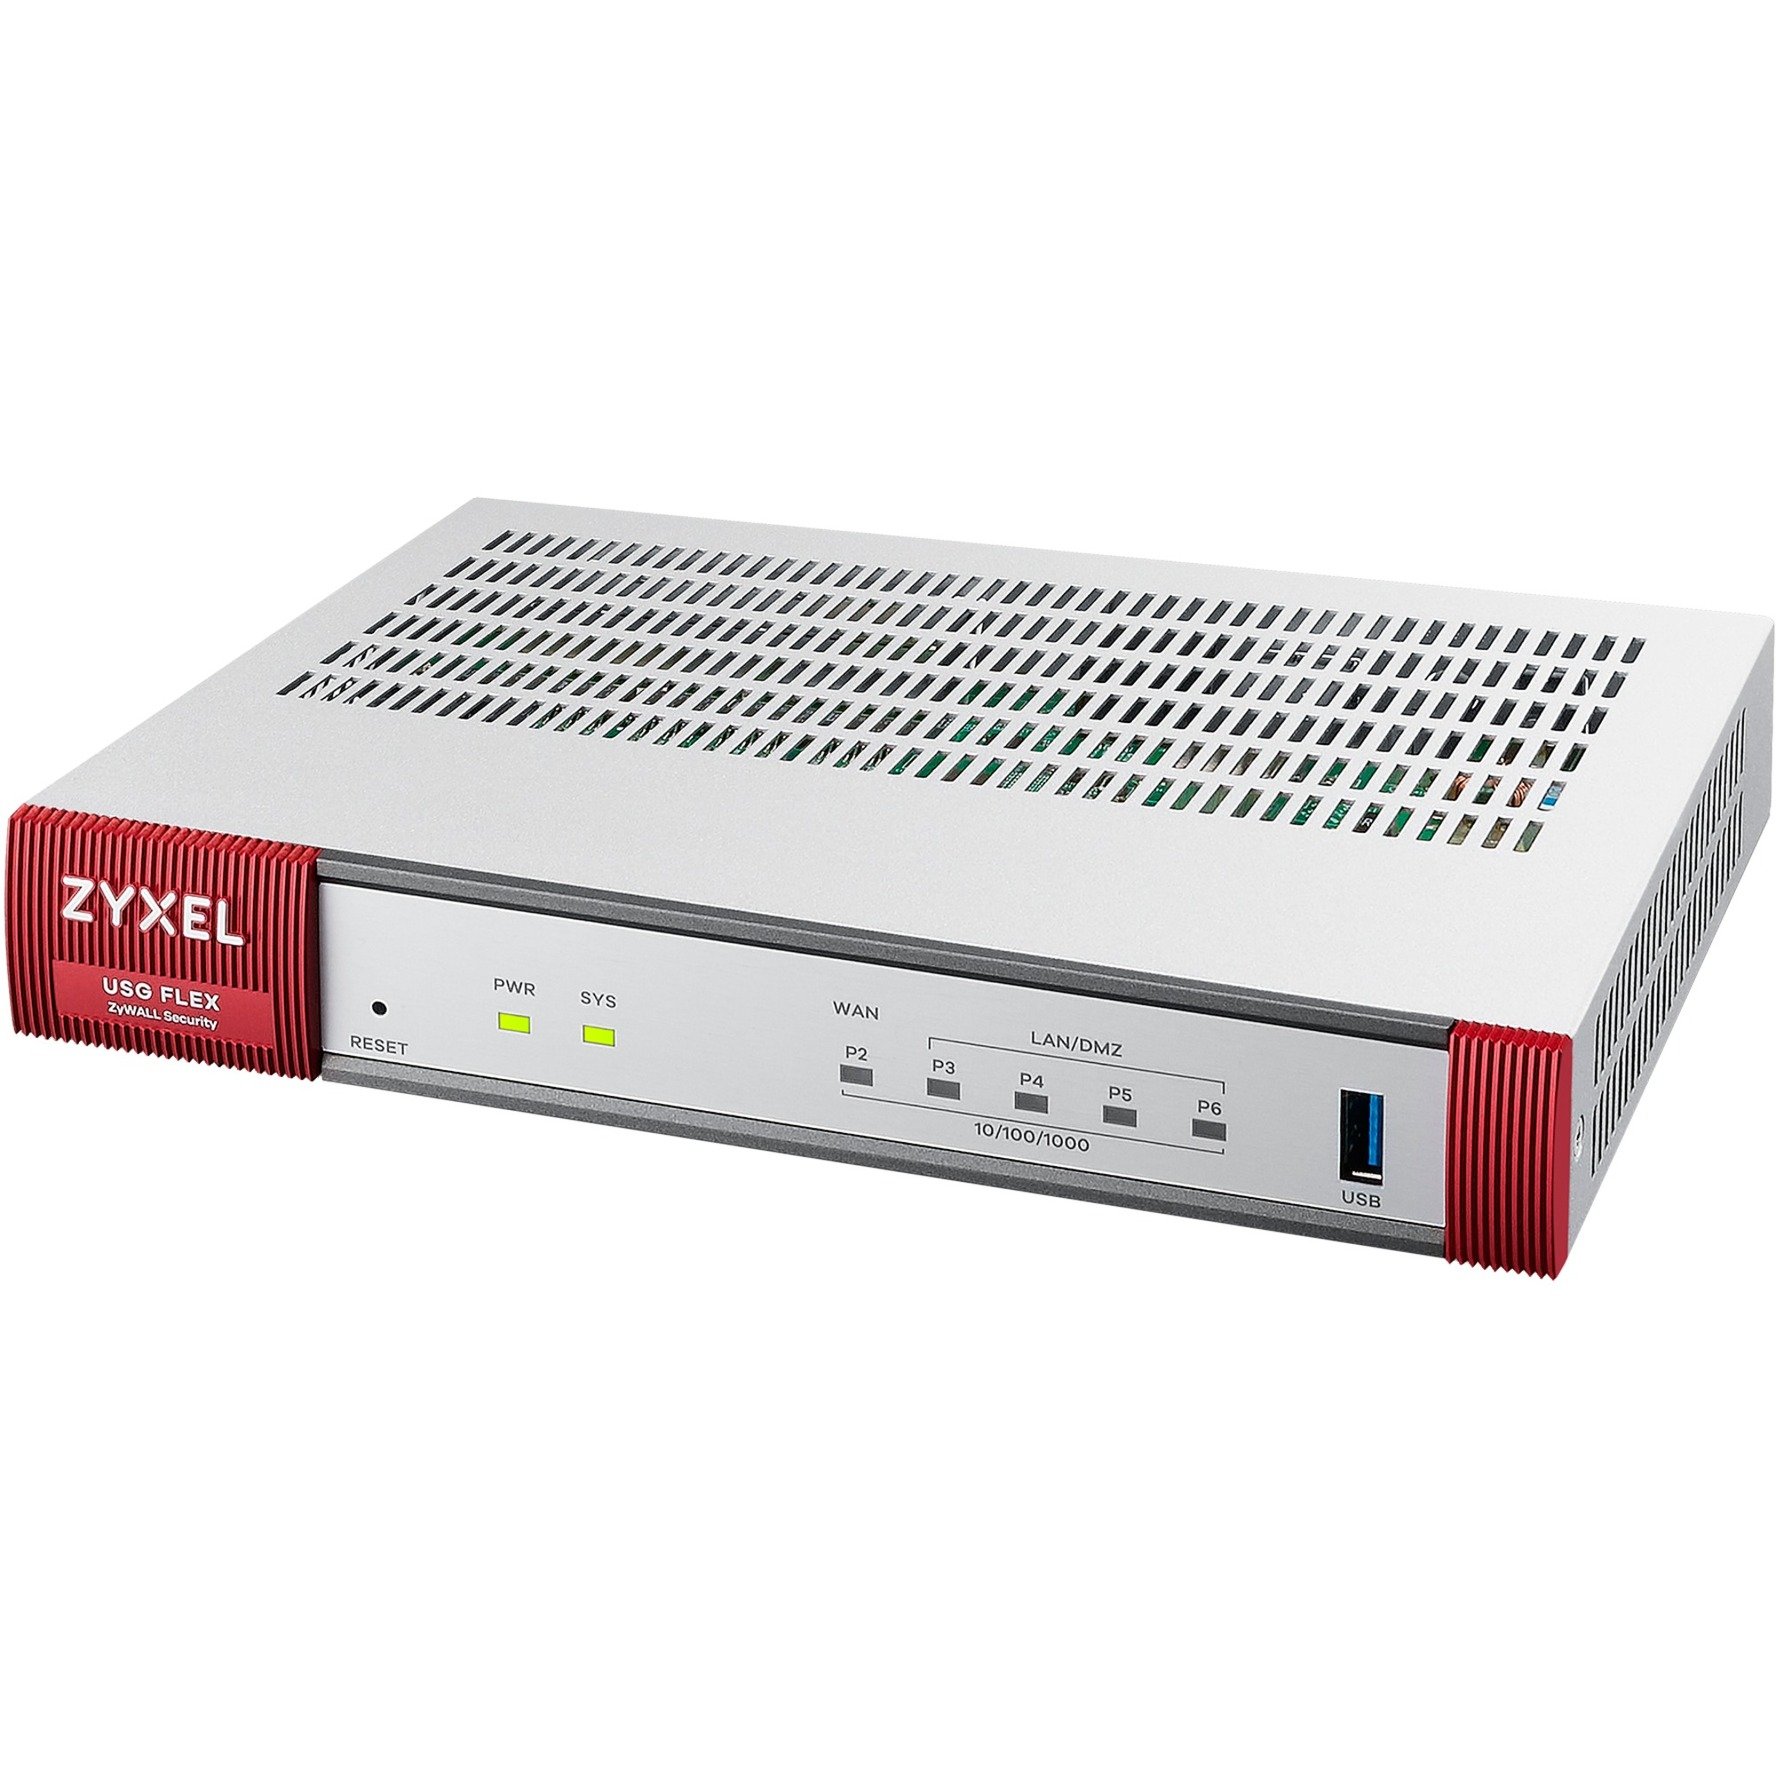 USG FLEX 100 UTM Bundle V2, 1 Jahr, Firewall von Zyxel